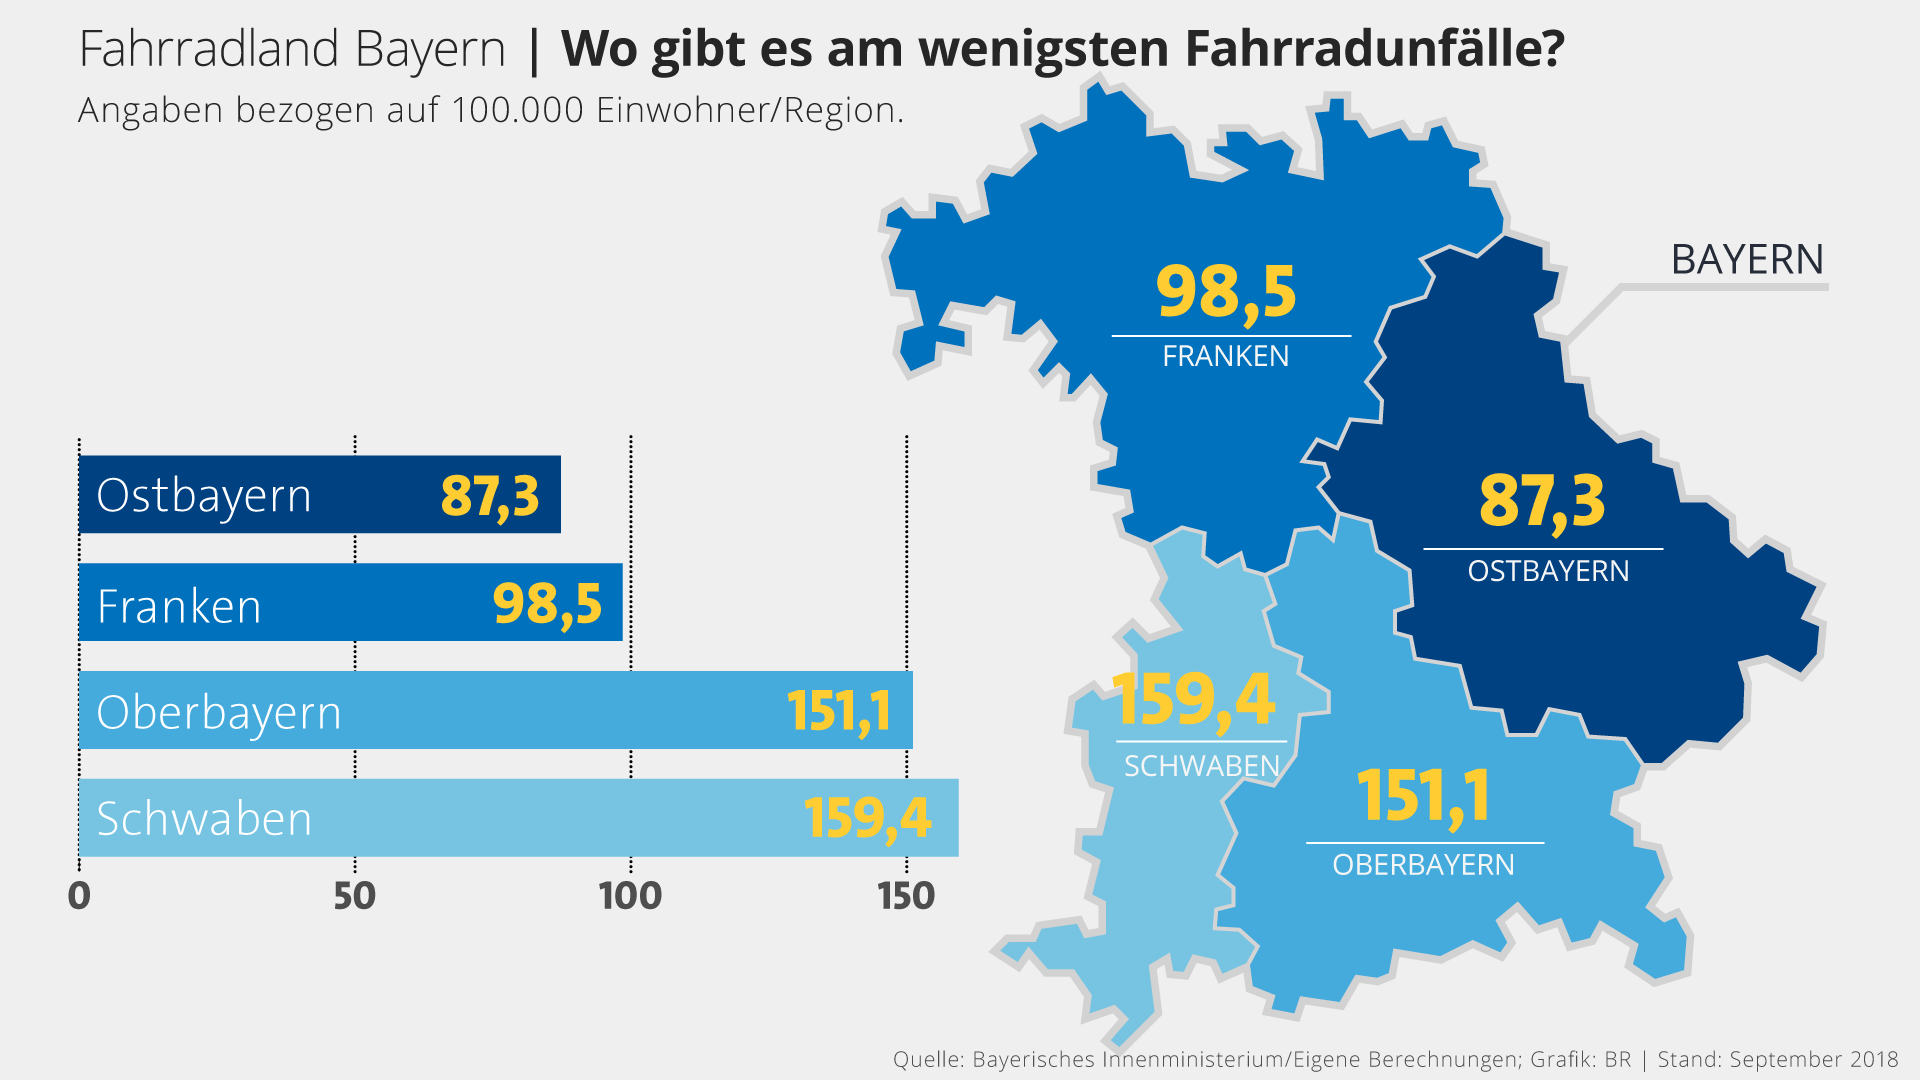 Infografik: Die wenigsten Fahrradunfälle gibt es in Ostbayern | Bild: BR